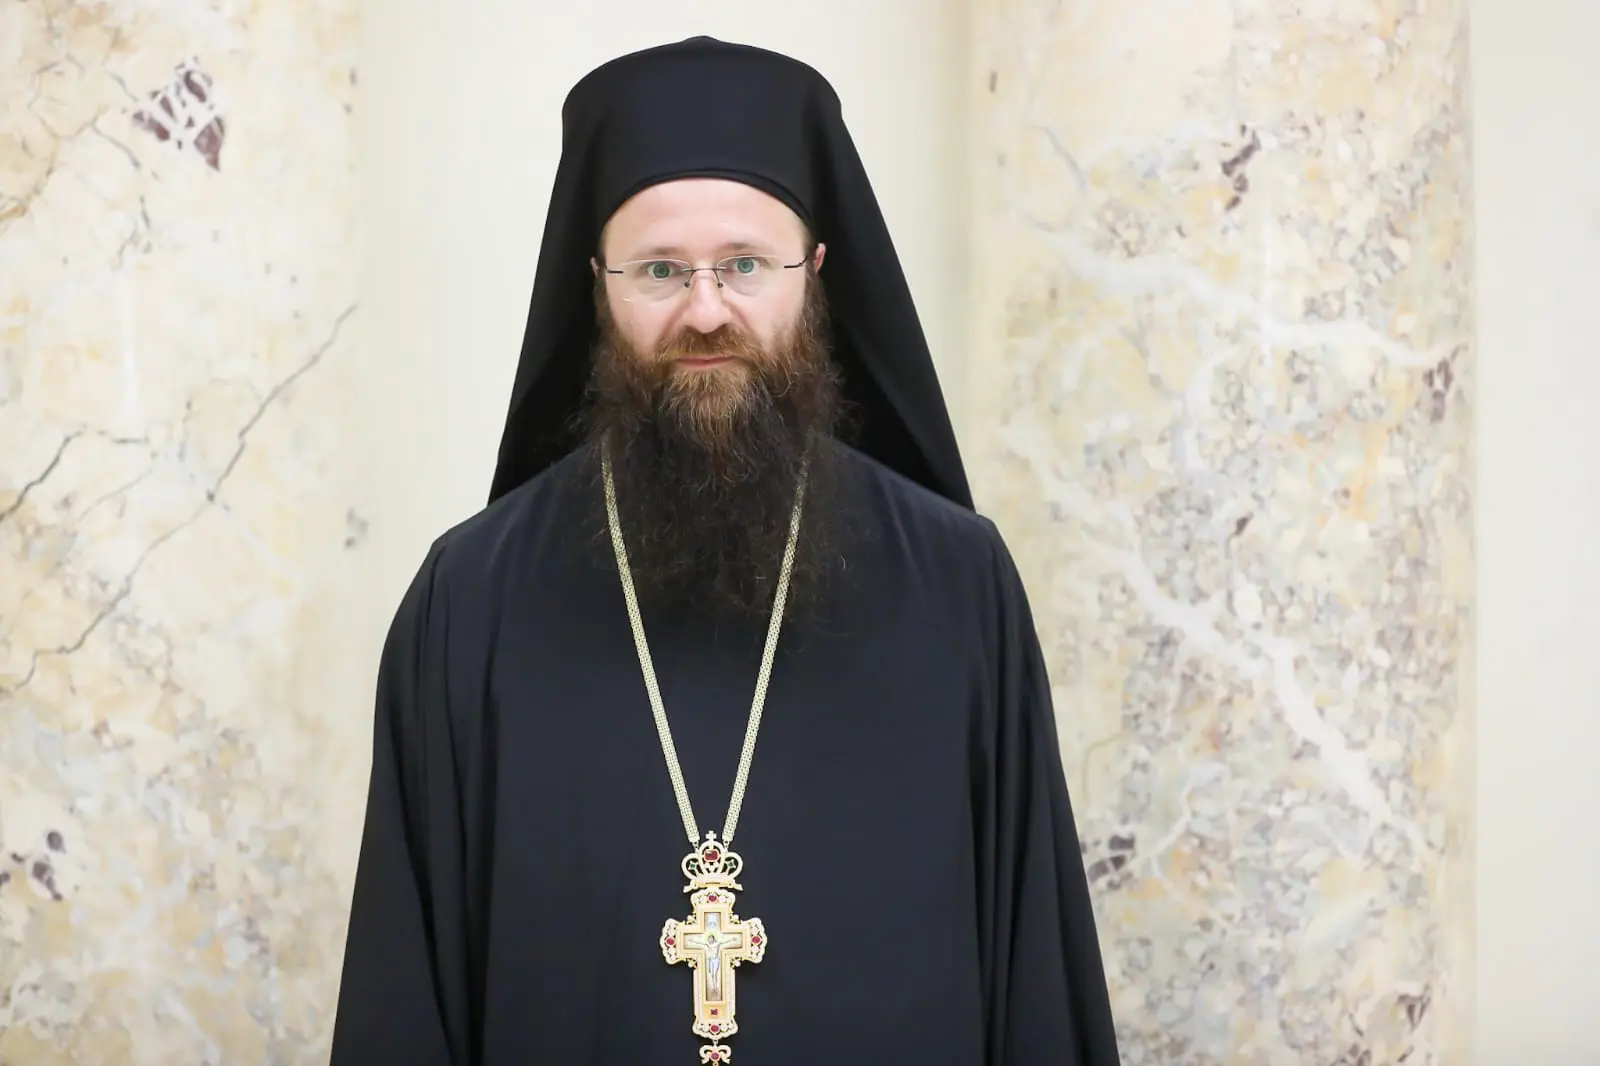 L’archimandrite Nectaire (Petre) est le nouvel évêque vicaire de l’archevêché d’Europe occidentale